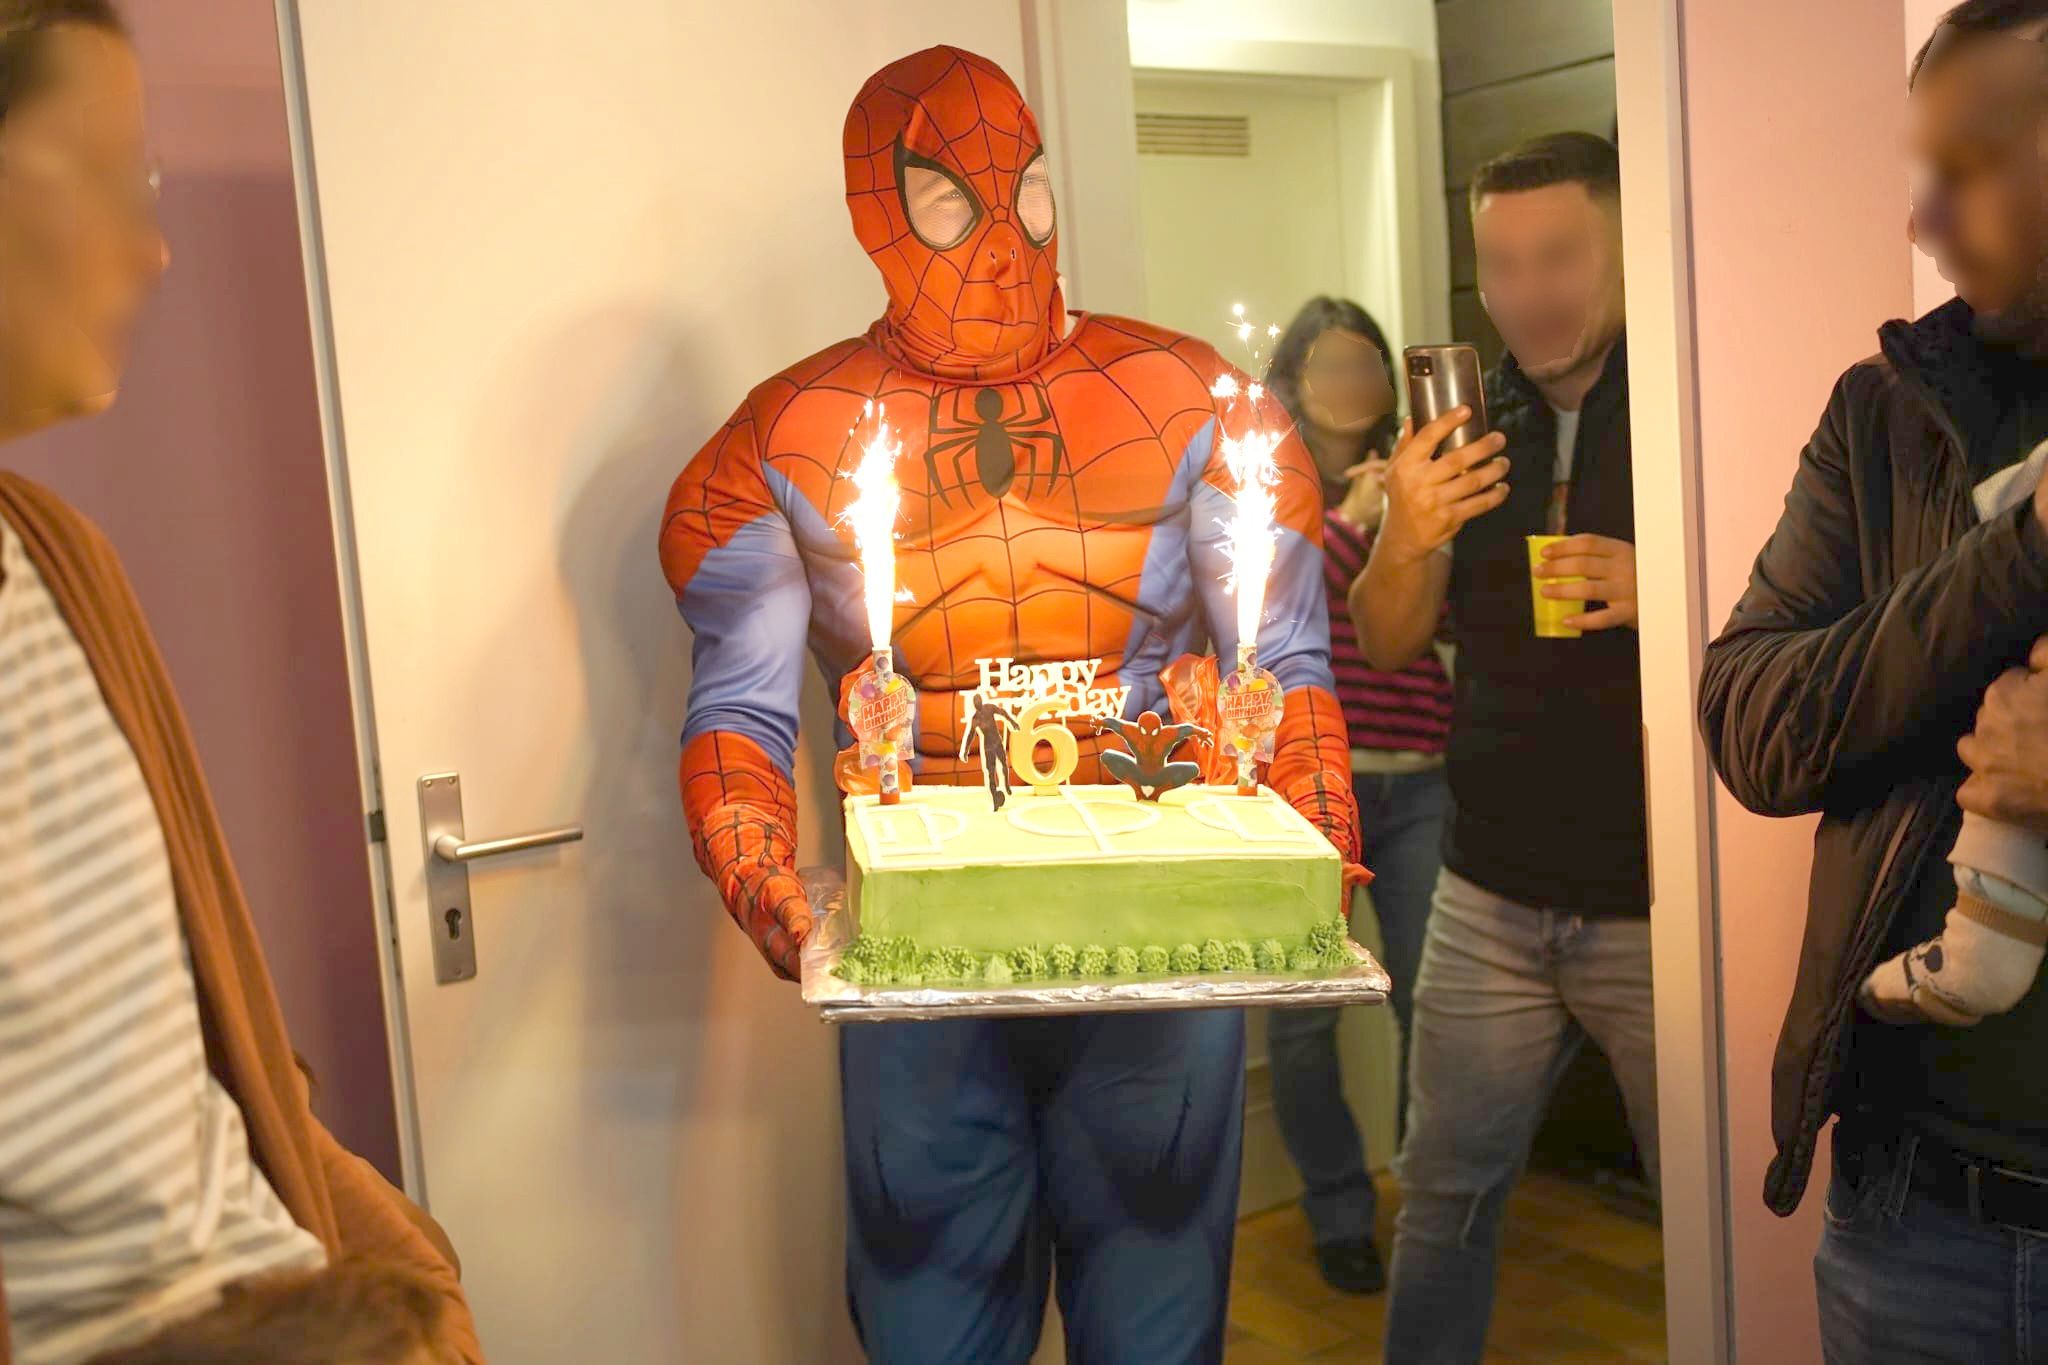 Auf dem Bild ist ein Animateur als Spiderman verkleidet, der mit einer Torte in den Händen gerade ins Zimmer tritt. Im Hintergrund sind Gäste zu sehen, die den Event fotografieren mit ihrem Mobiltelefon..